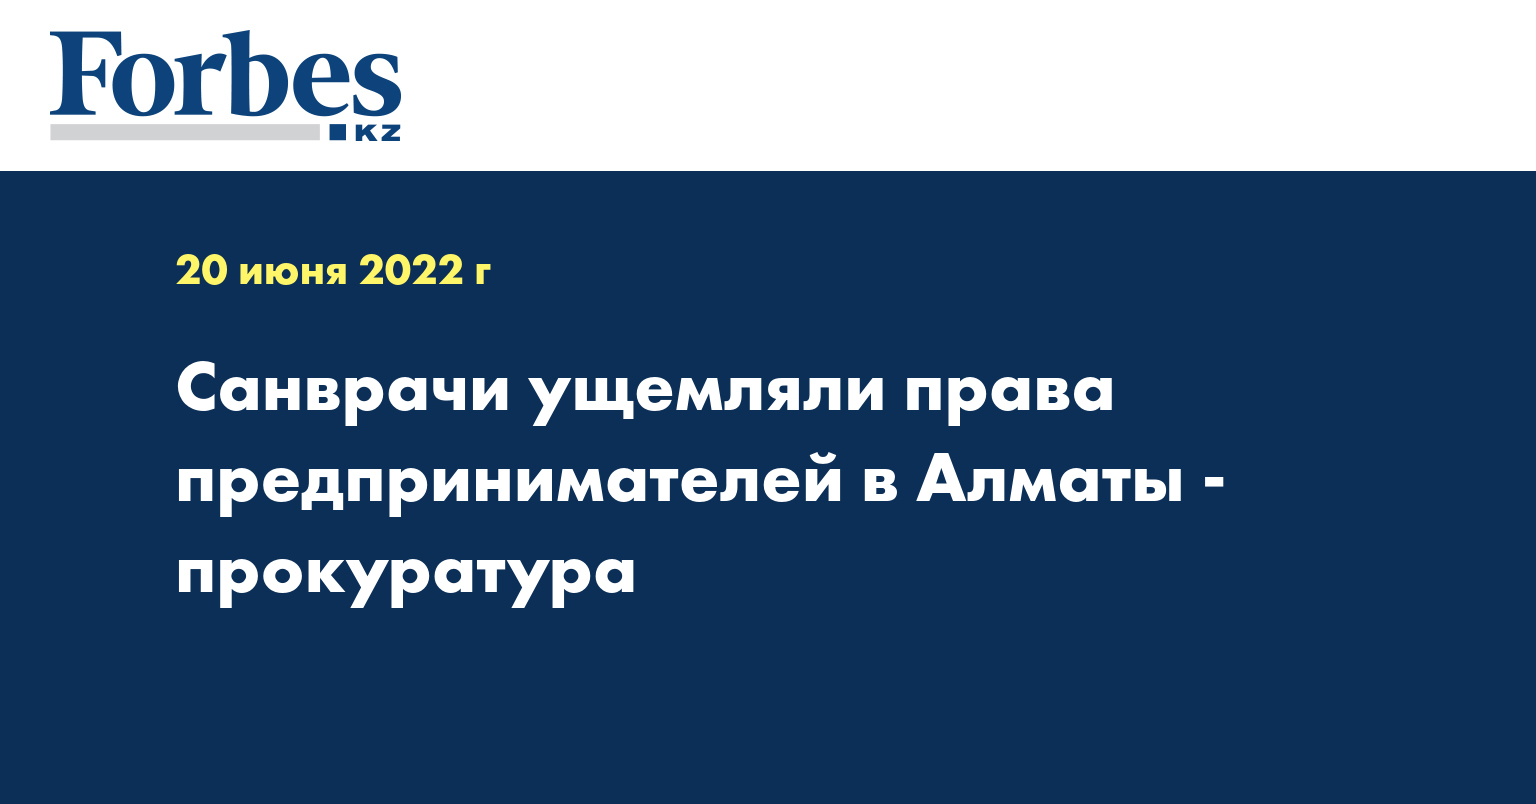 Cанврачи ущемляли права предпринимателей в Алматы - прокуратура